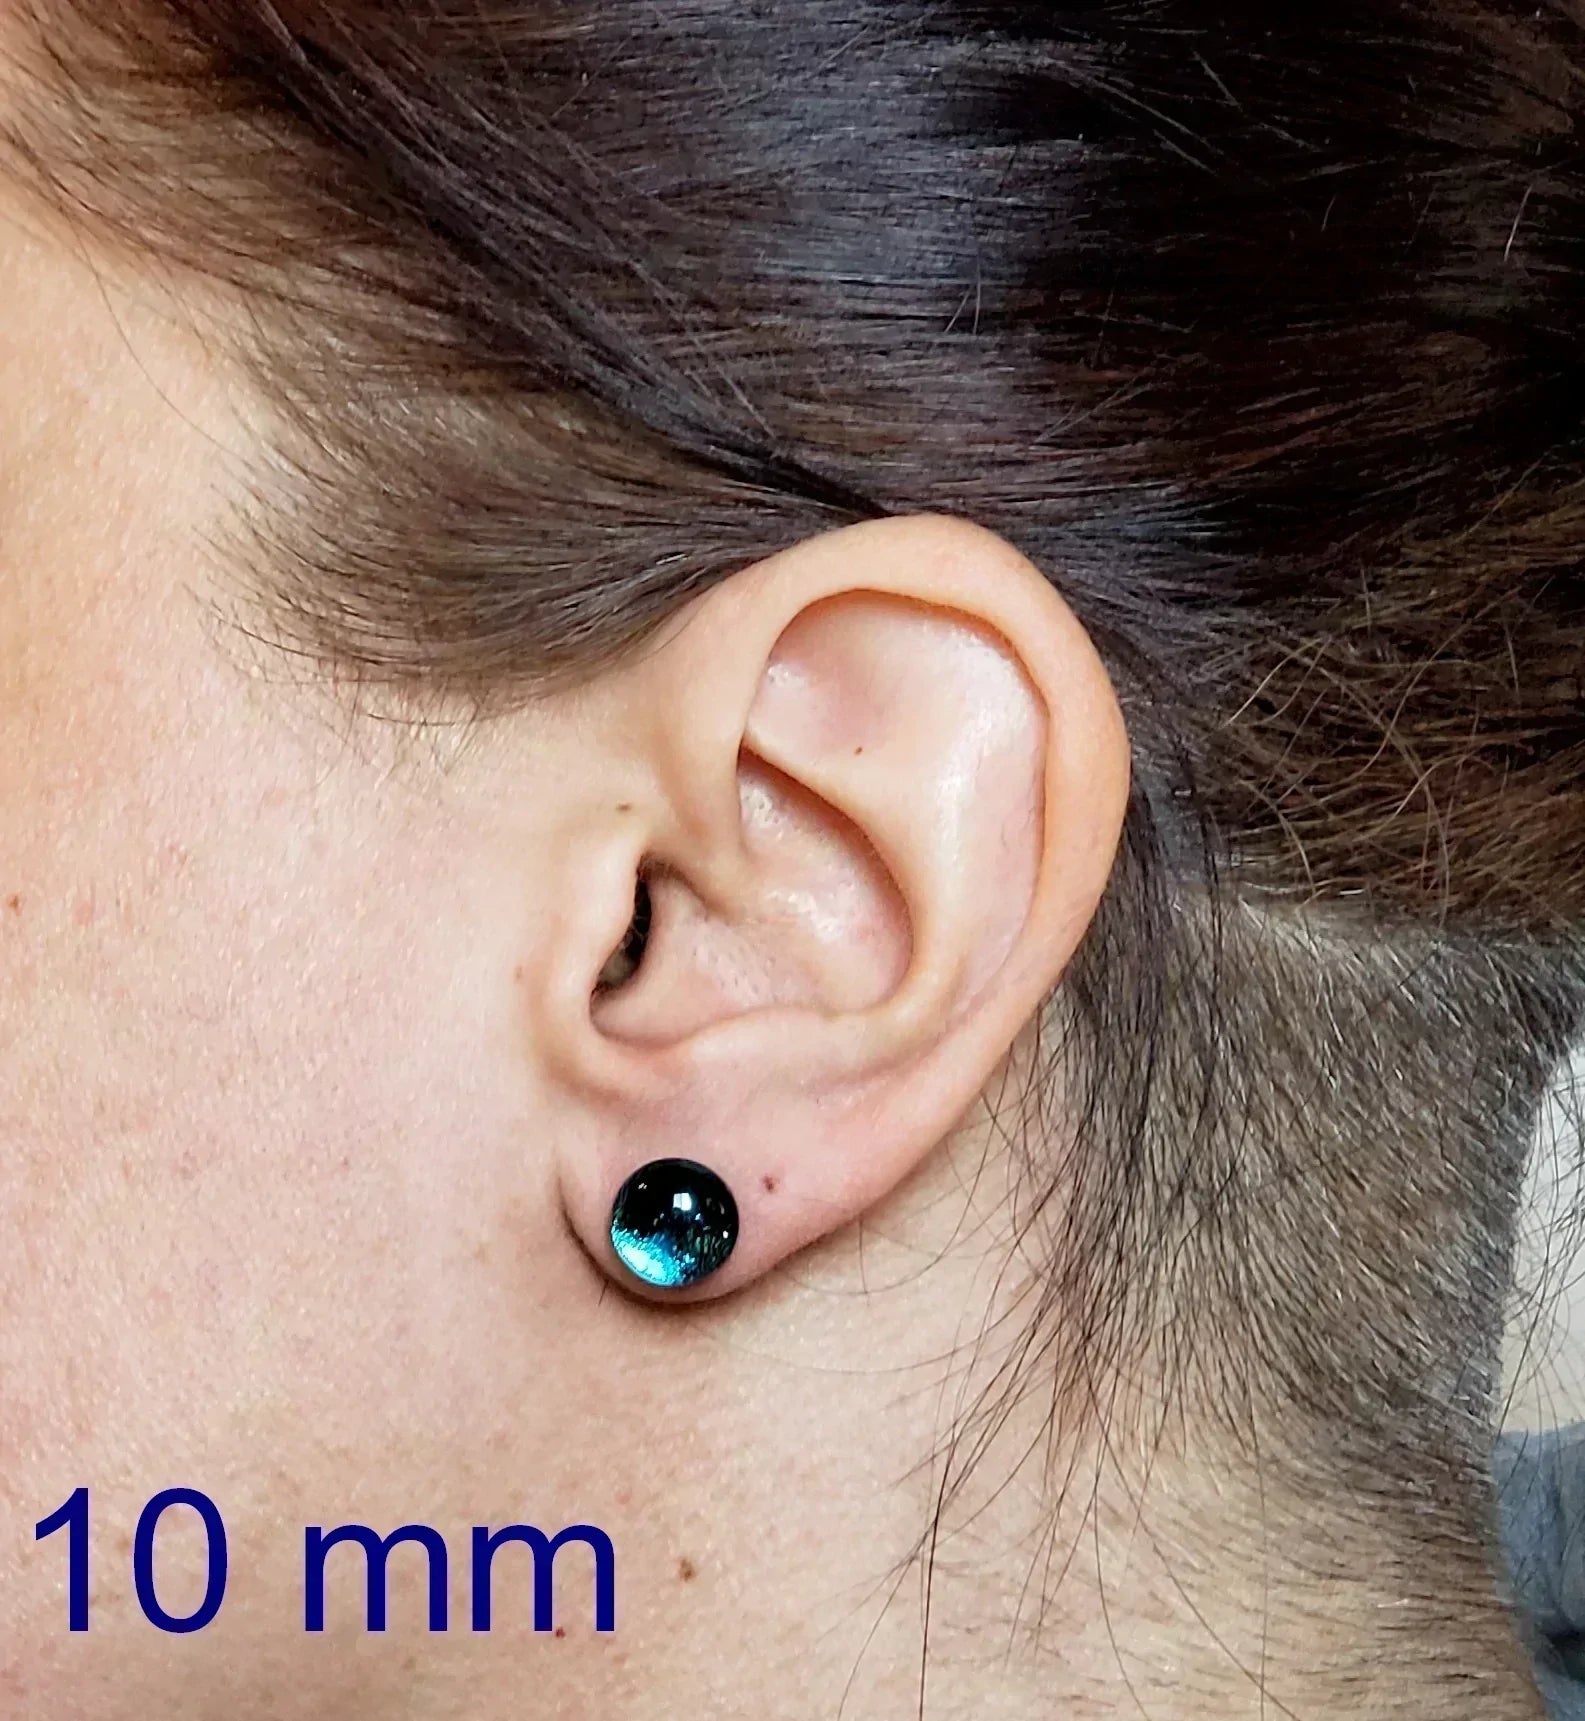 +/- 13 mm, Boucles d'oreilles dépareillées, verre fusion #46 - Bijoux Le fil d'Ariane